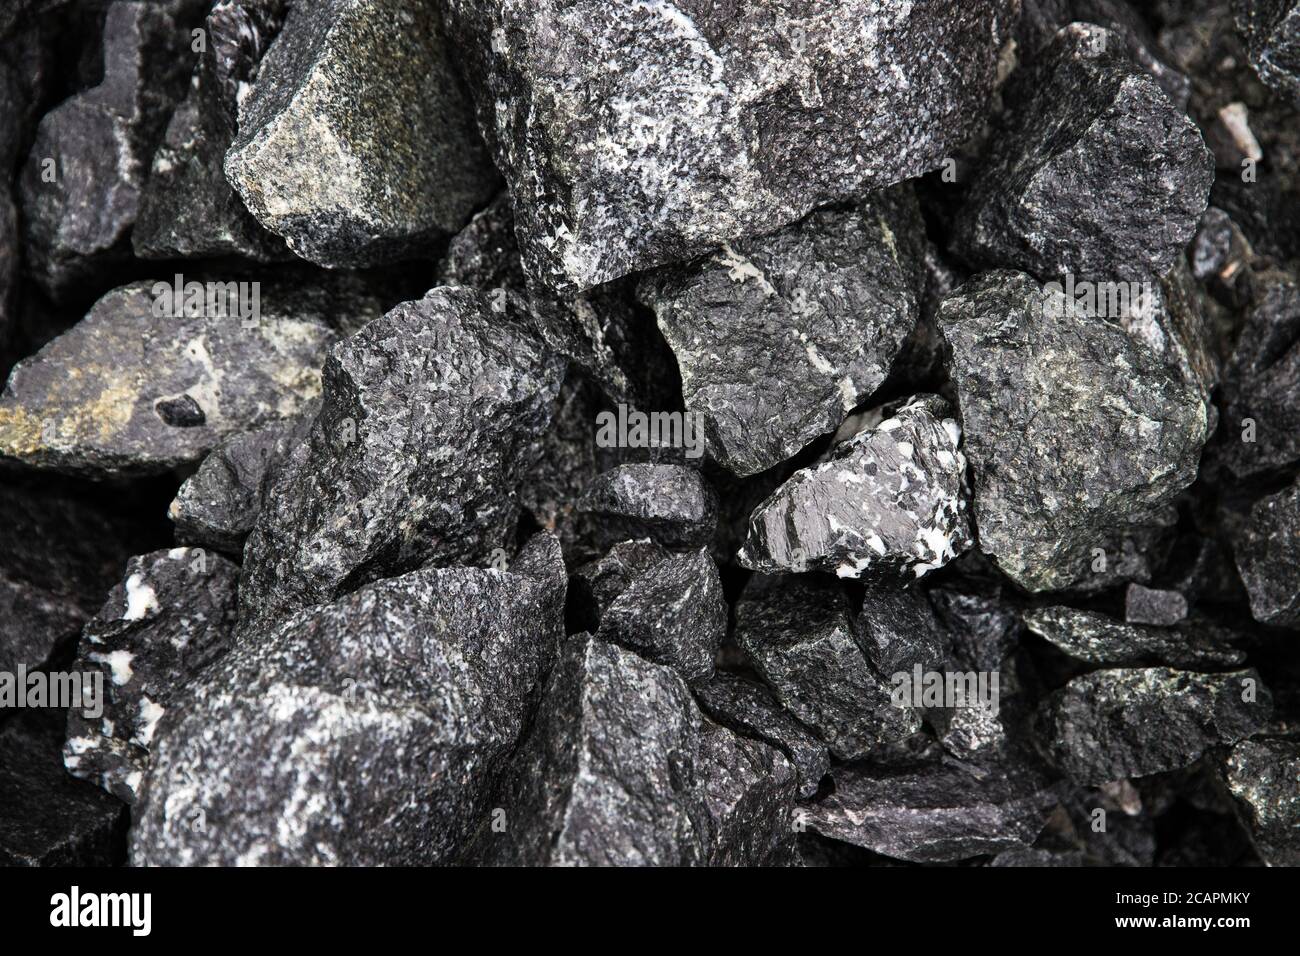 Fragments de pierres noirs naturels humides avec billes perlées pour les arrière-plans, vue du dessus. Gros morceaux de pierre cassés. Tas de pierres humides noires Banque D'Images